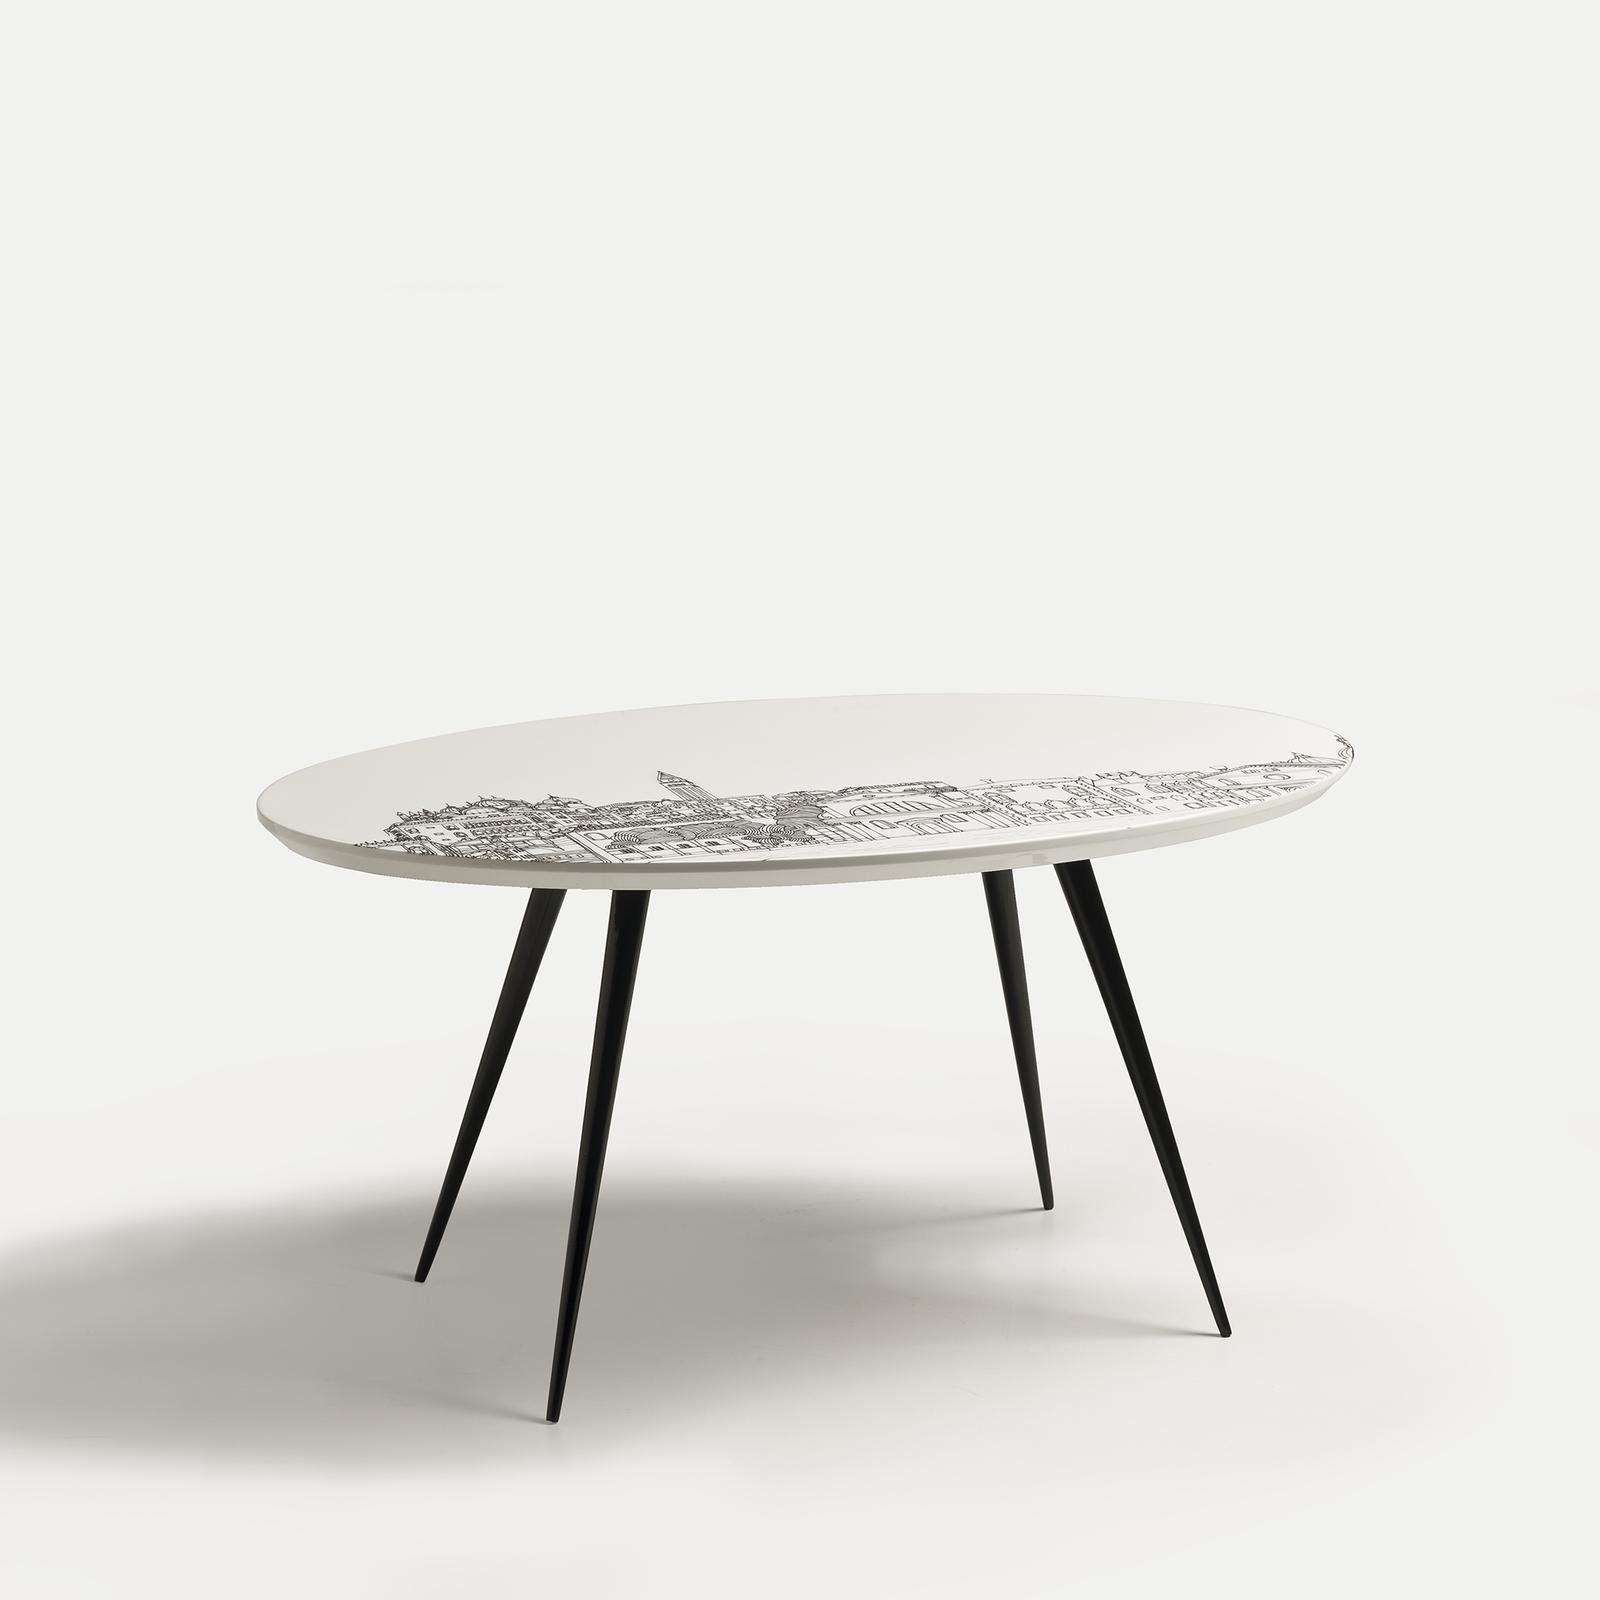 Cette table basse moderne fait partie de la série de tables modernes Venezia, conçue par Anna Sutor et inspirée par les paysages vénitiens et leur architecture emblématique. Entièrement en bois, quatre pieds fins et inclinés, avec une finition noire